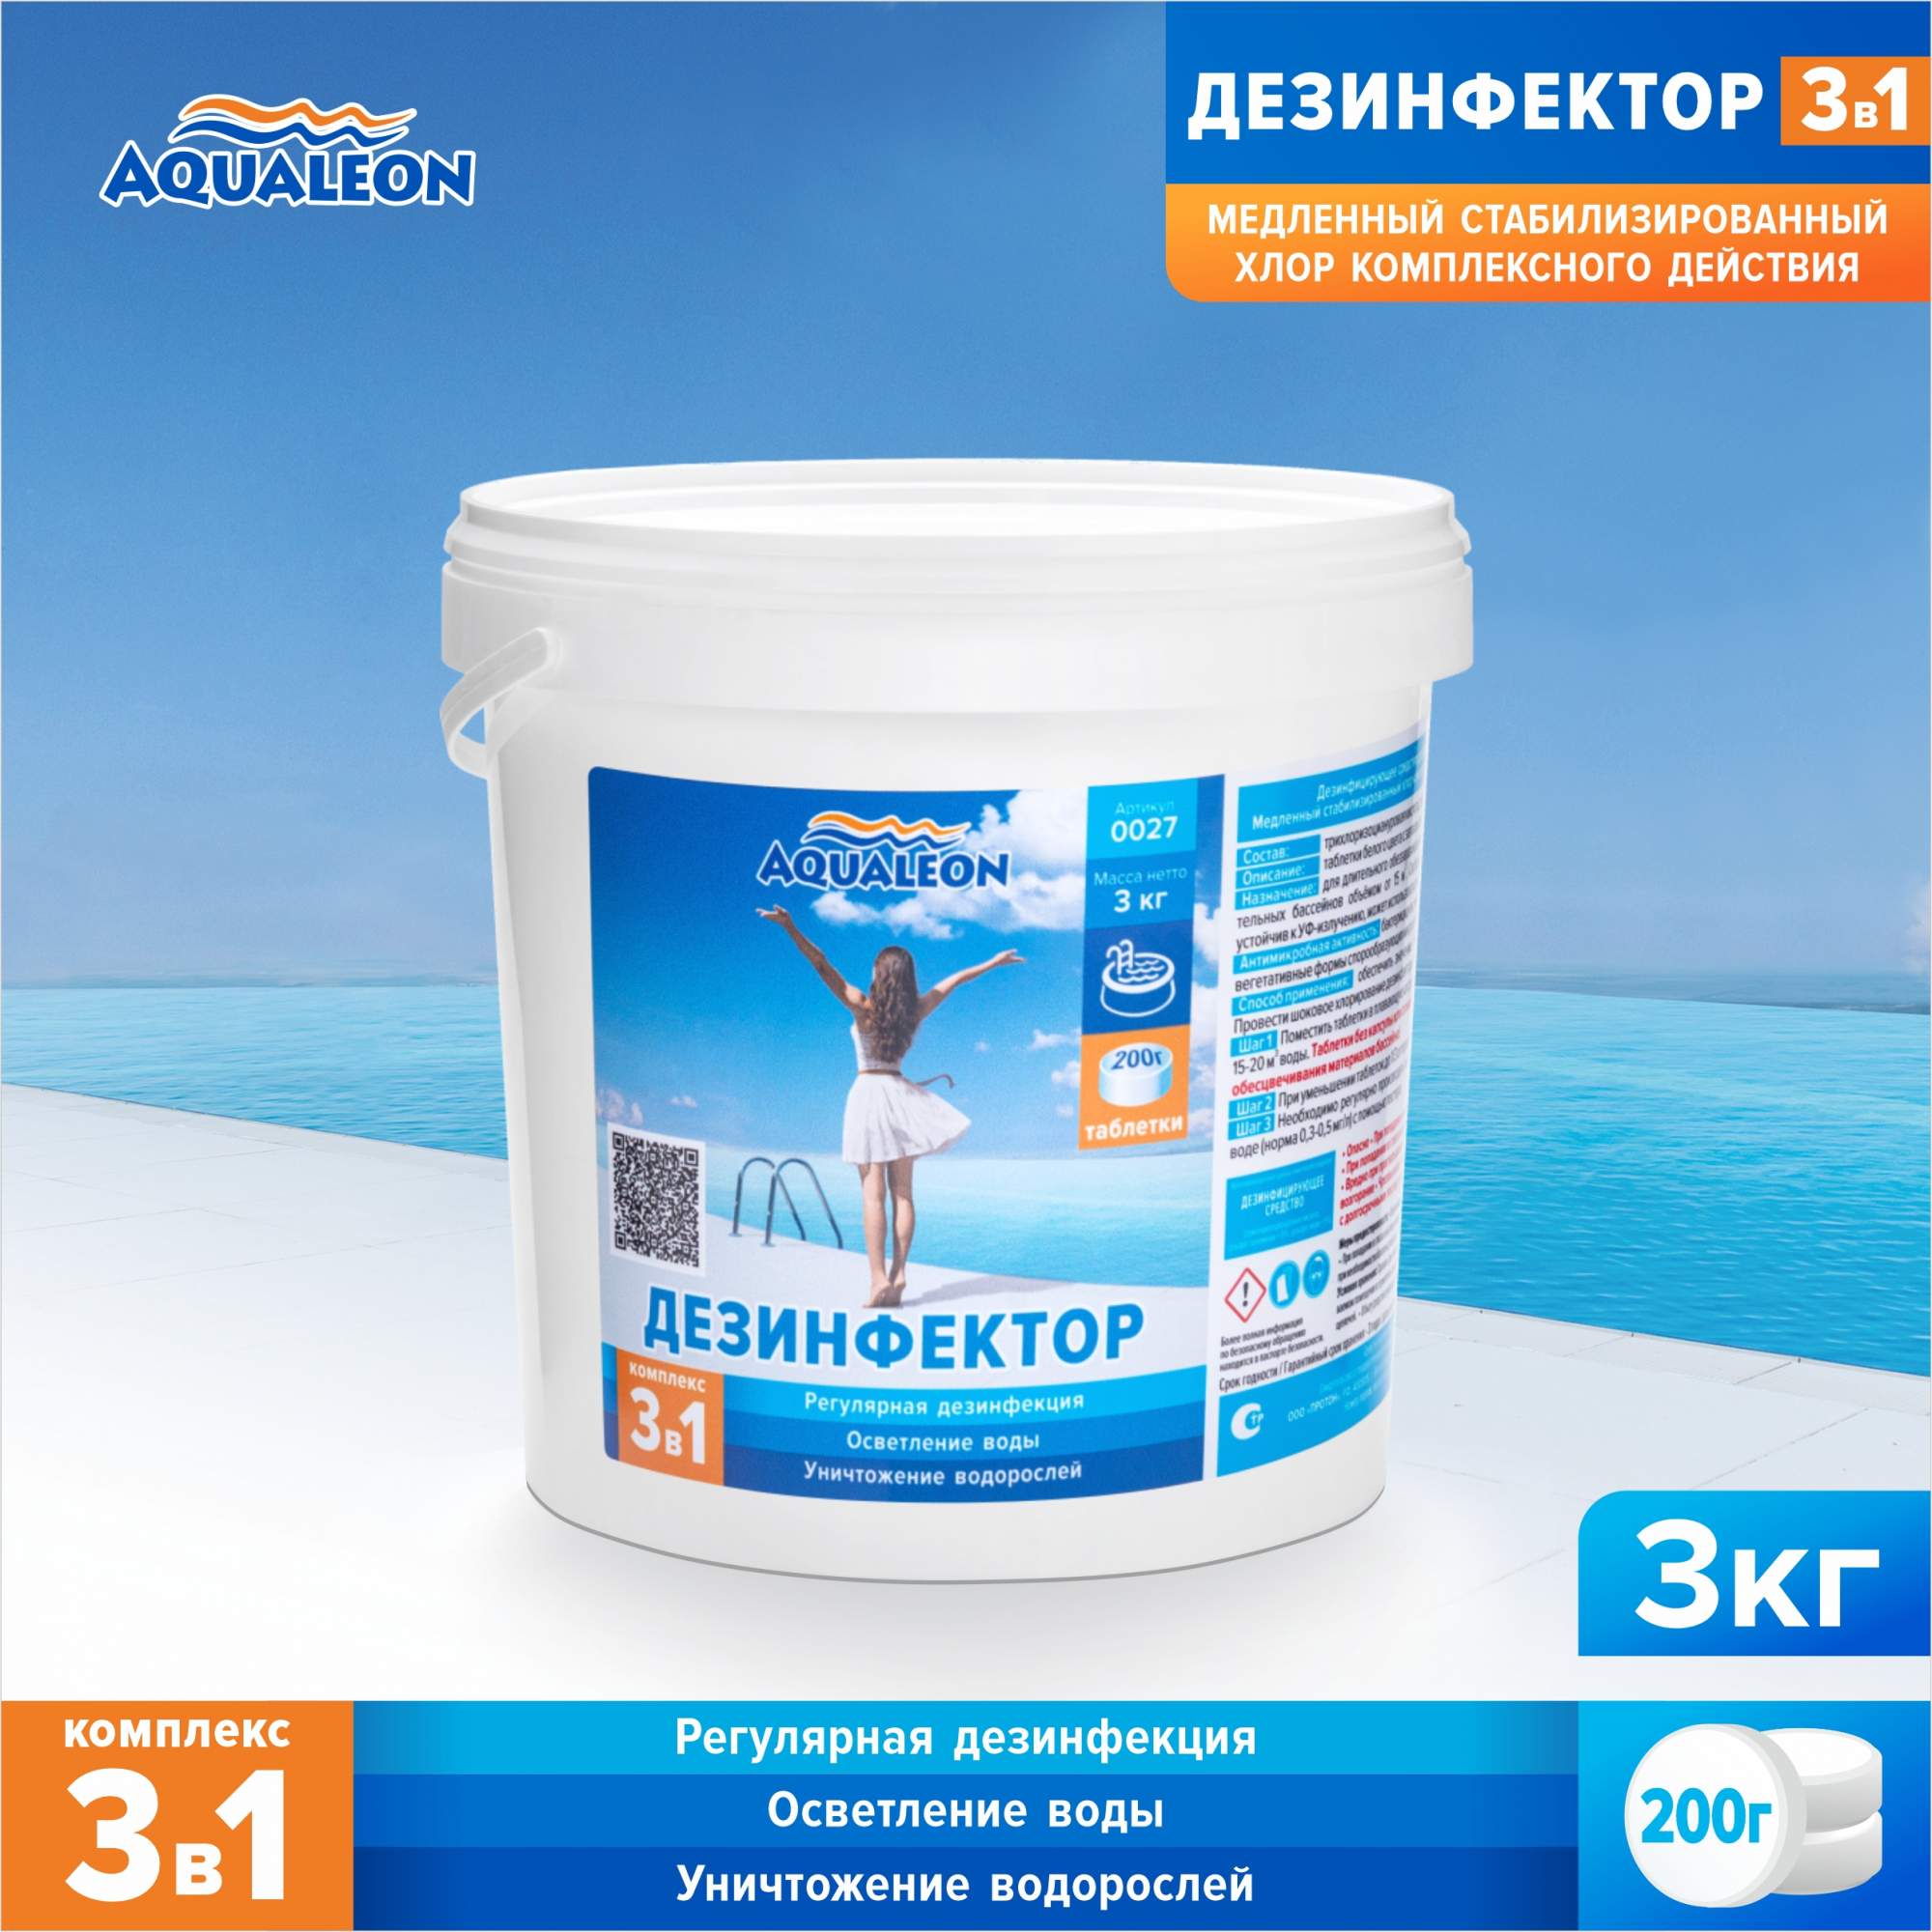 Медленный хлор для бассейна (МСХ КД) Aqualeon комплексный таблетки по 200 гр., 3 кг - купить в Москве, цены на Мегамаркет | 600010117815